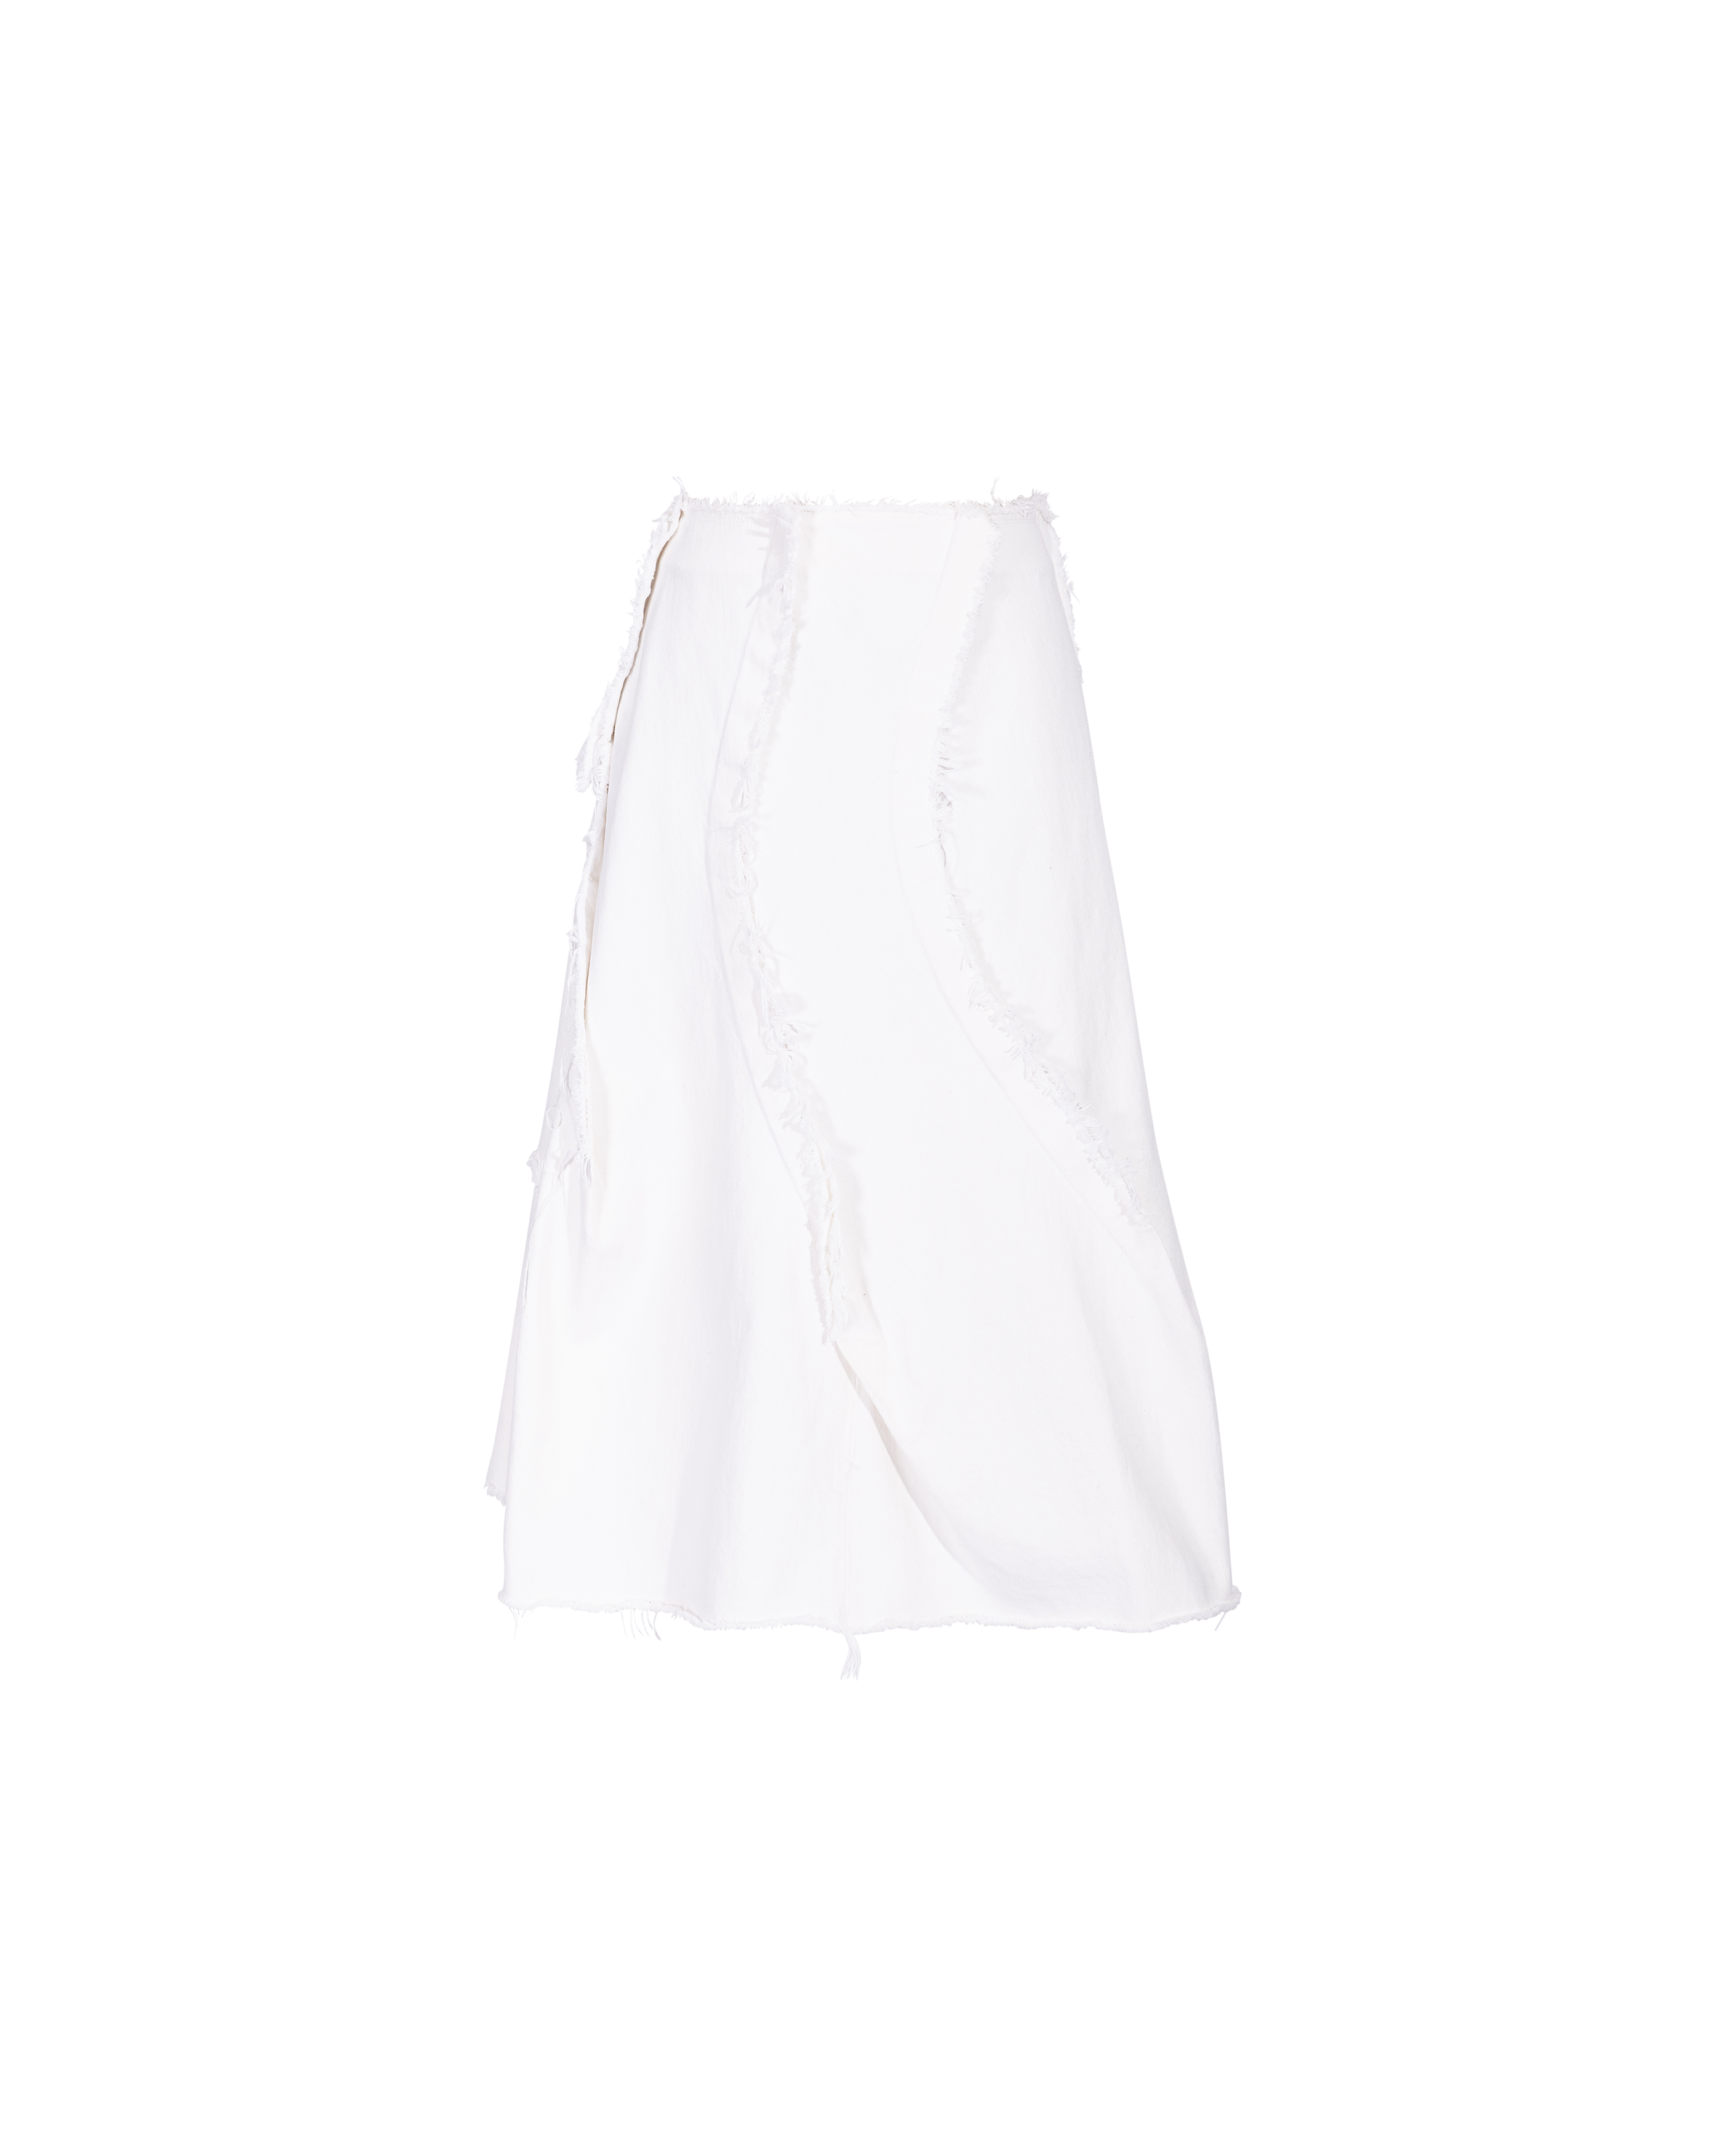 c. 2004 White Denim Skirt with Raw Fringe Details